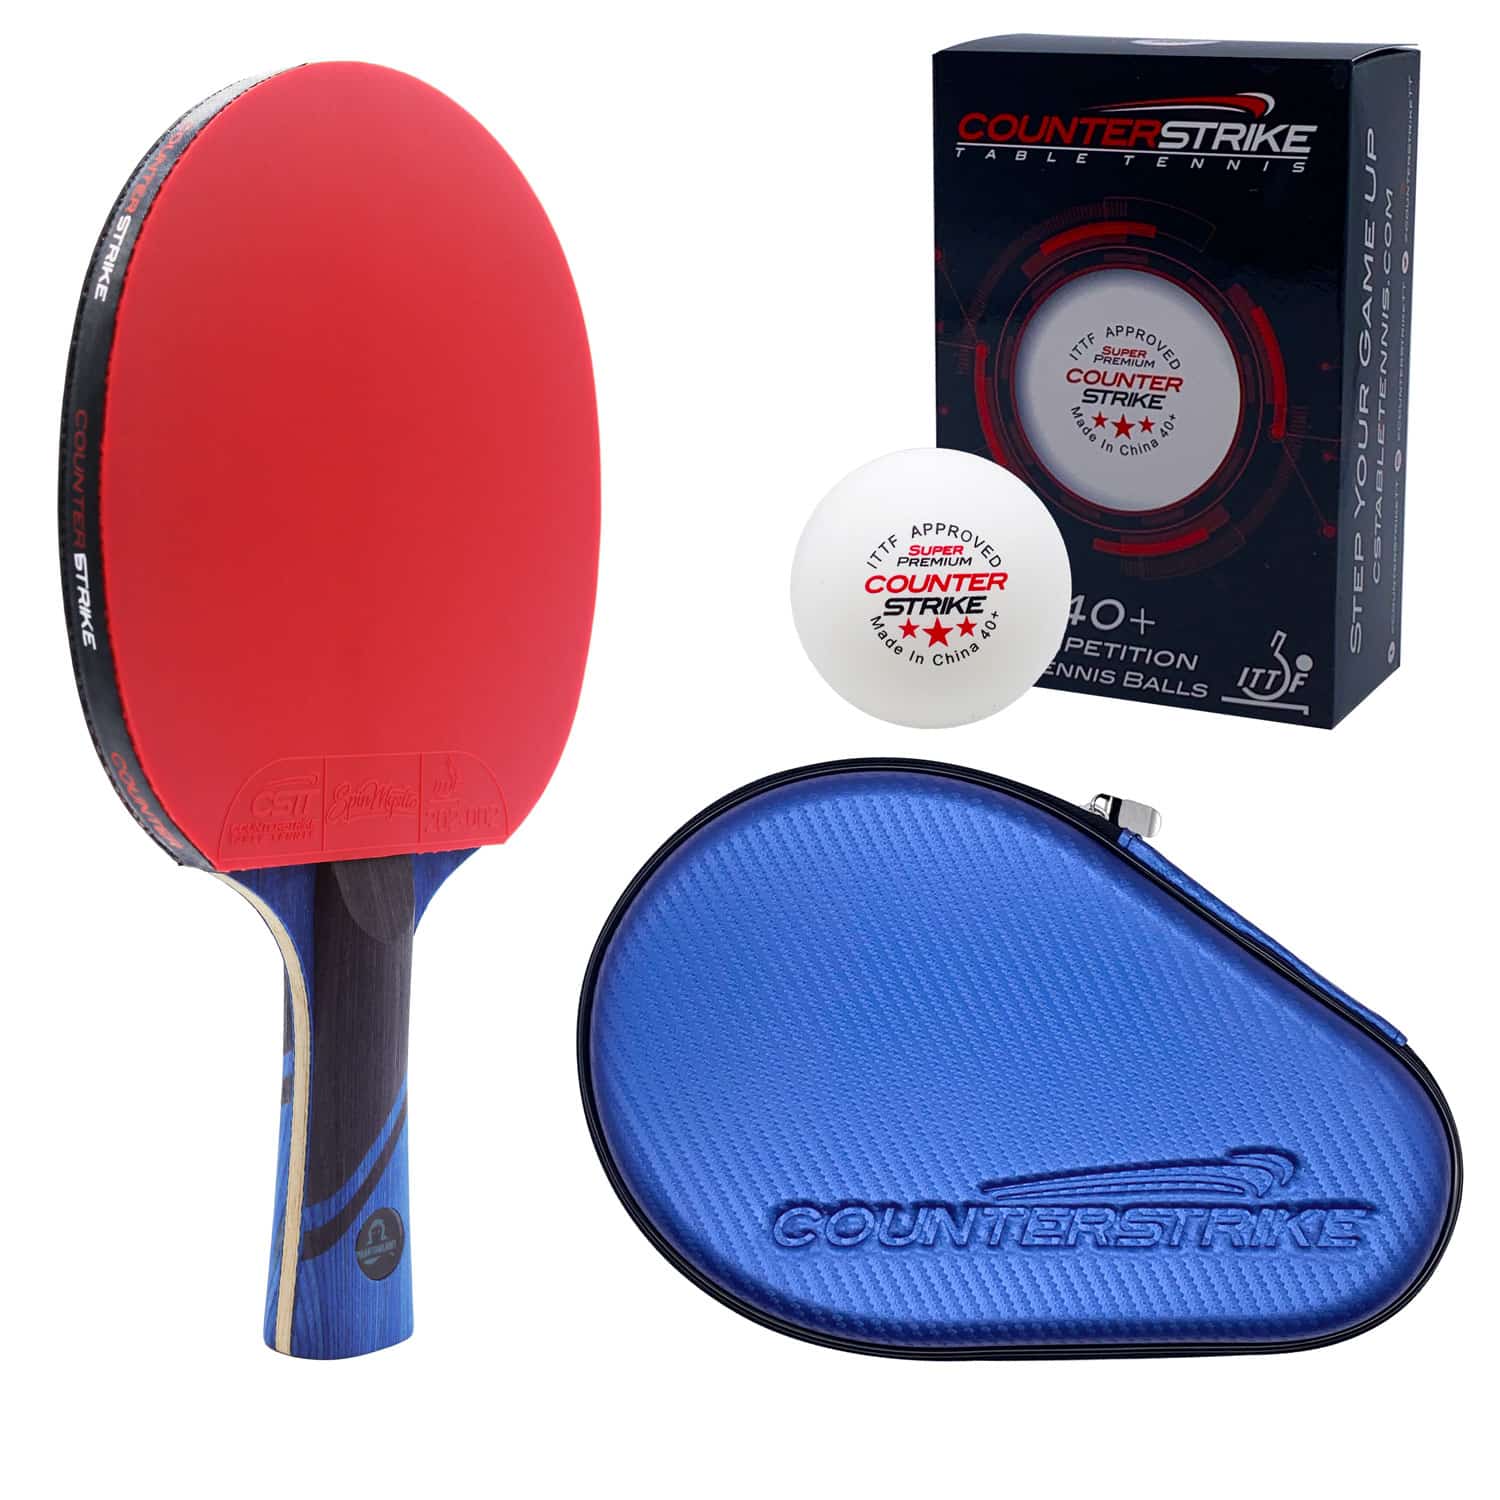 Phantom Light Paddle BUNDLE Paddle Hard Case Ping Pong Balls CounterStrike Table Tennis